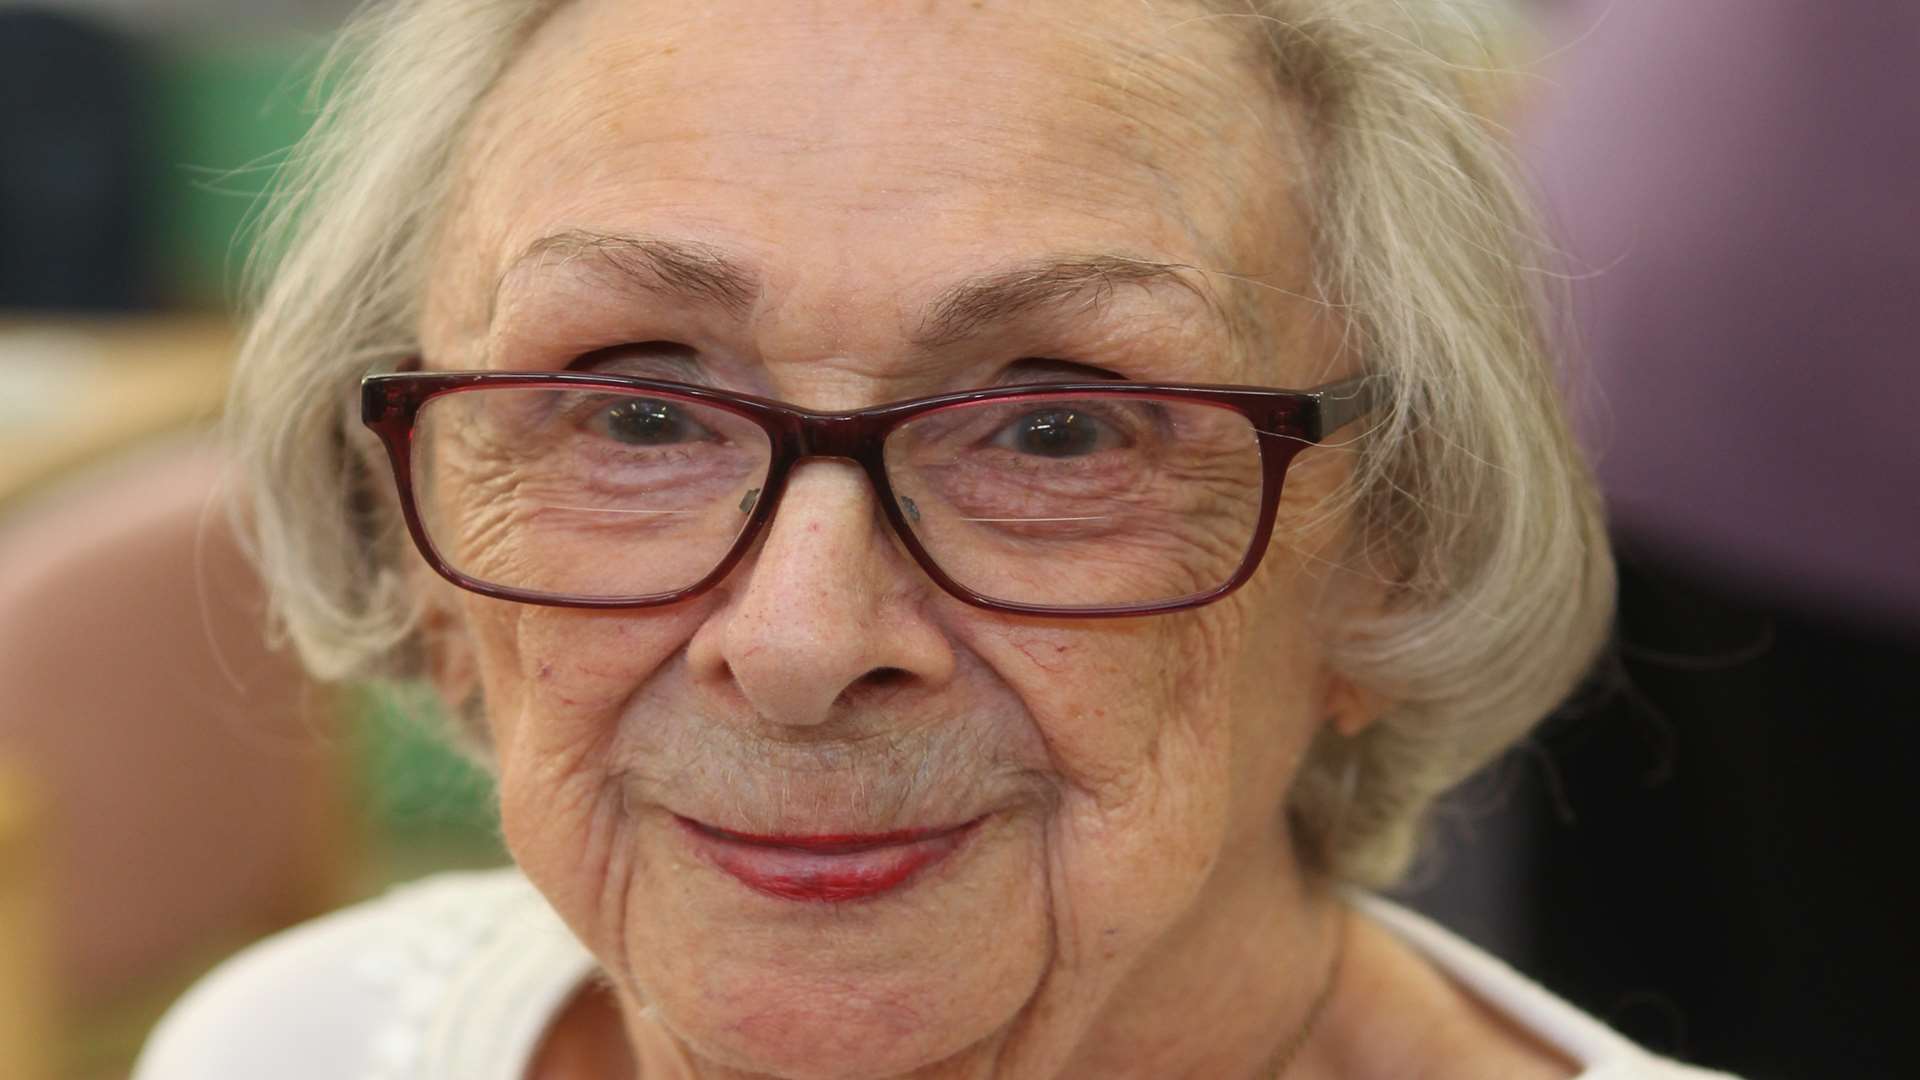 Diana Dickson, 89, enjoys the company of residents